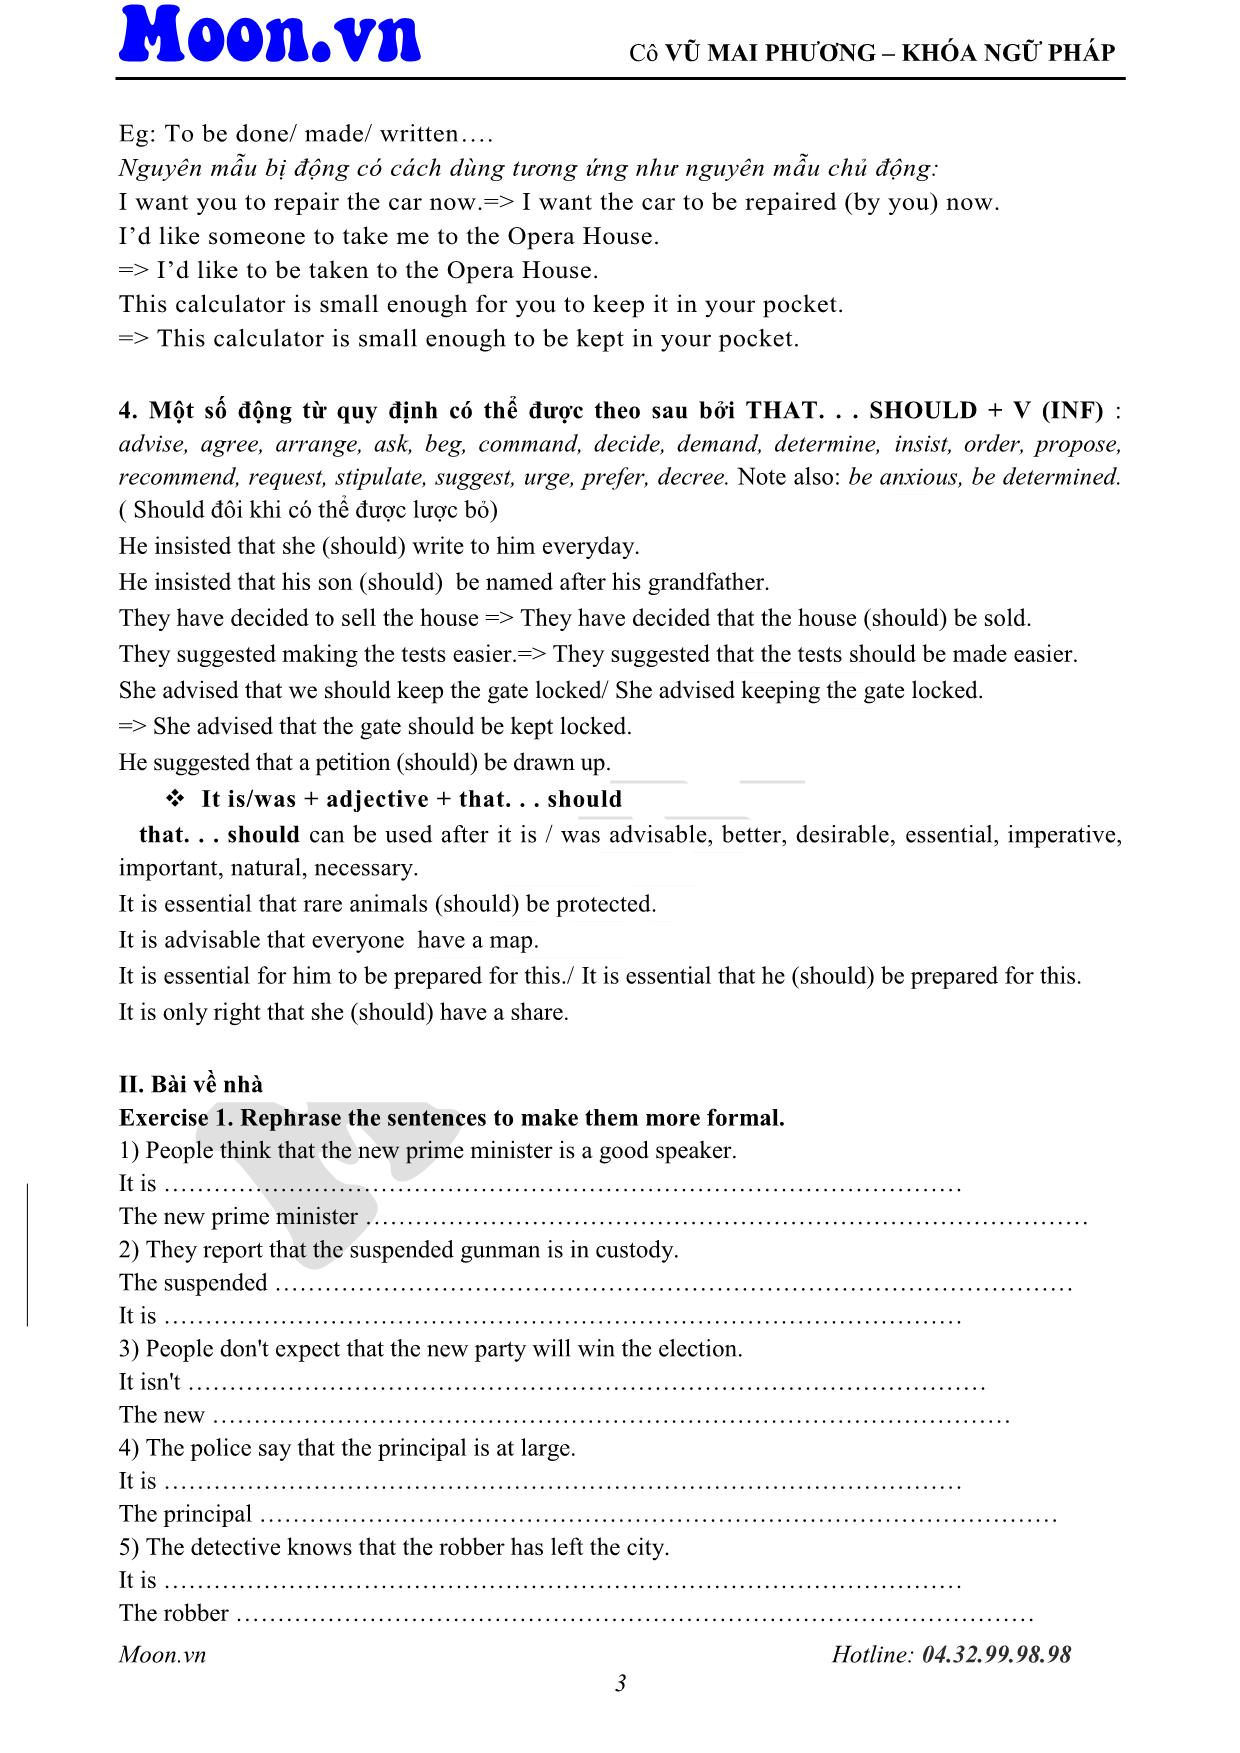 Giáo trình Tiếng Anh - Cấu trúc câu chủ động, bị động (Phần 3) trang 3